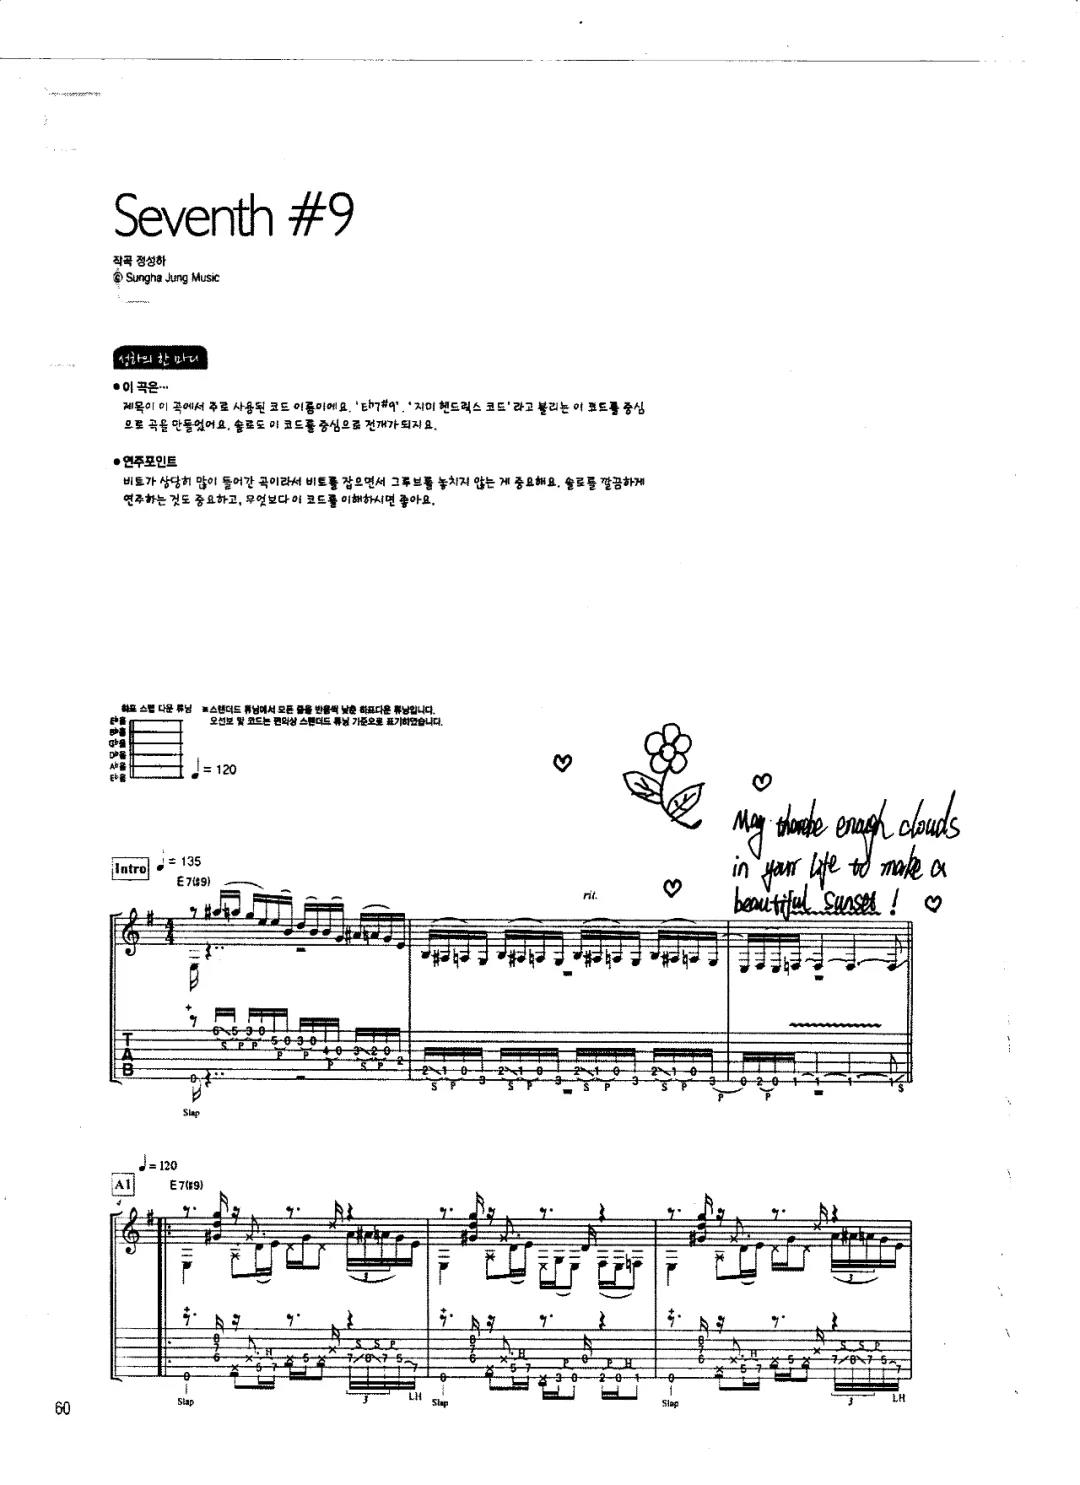 郑成河《seventh#9（指弹）》吉他谱-Guitar Music Score